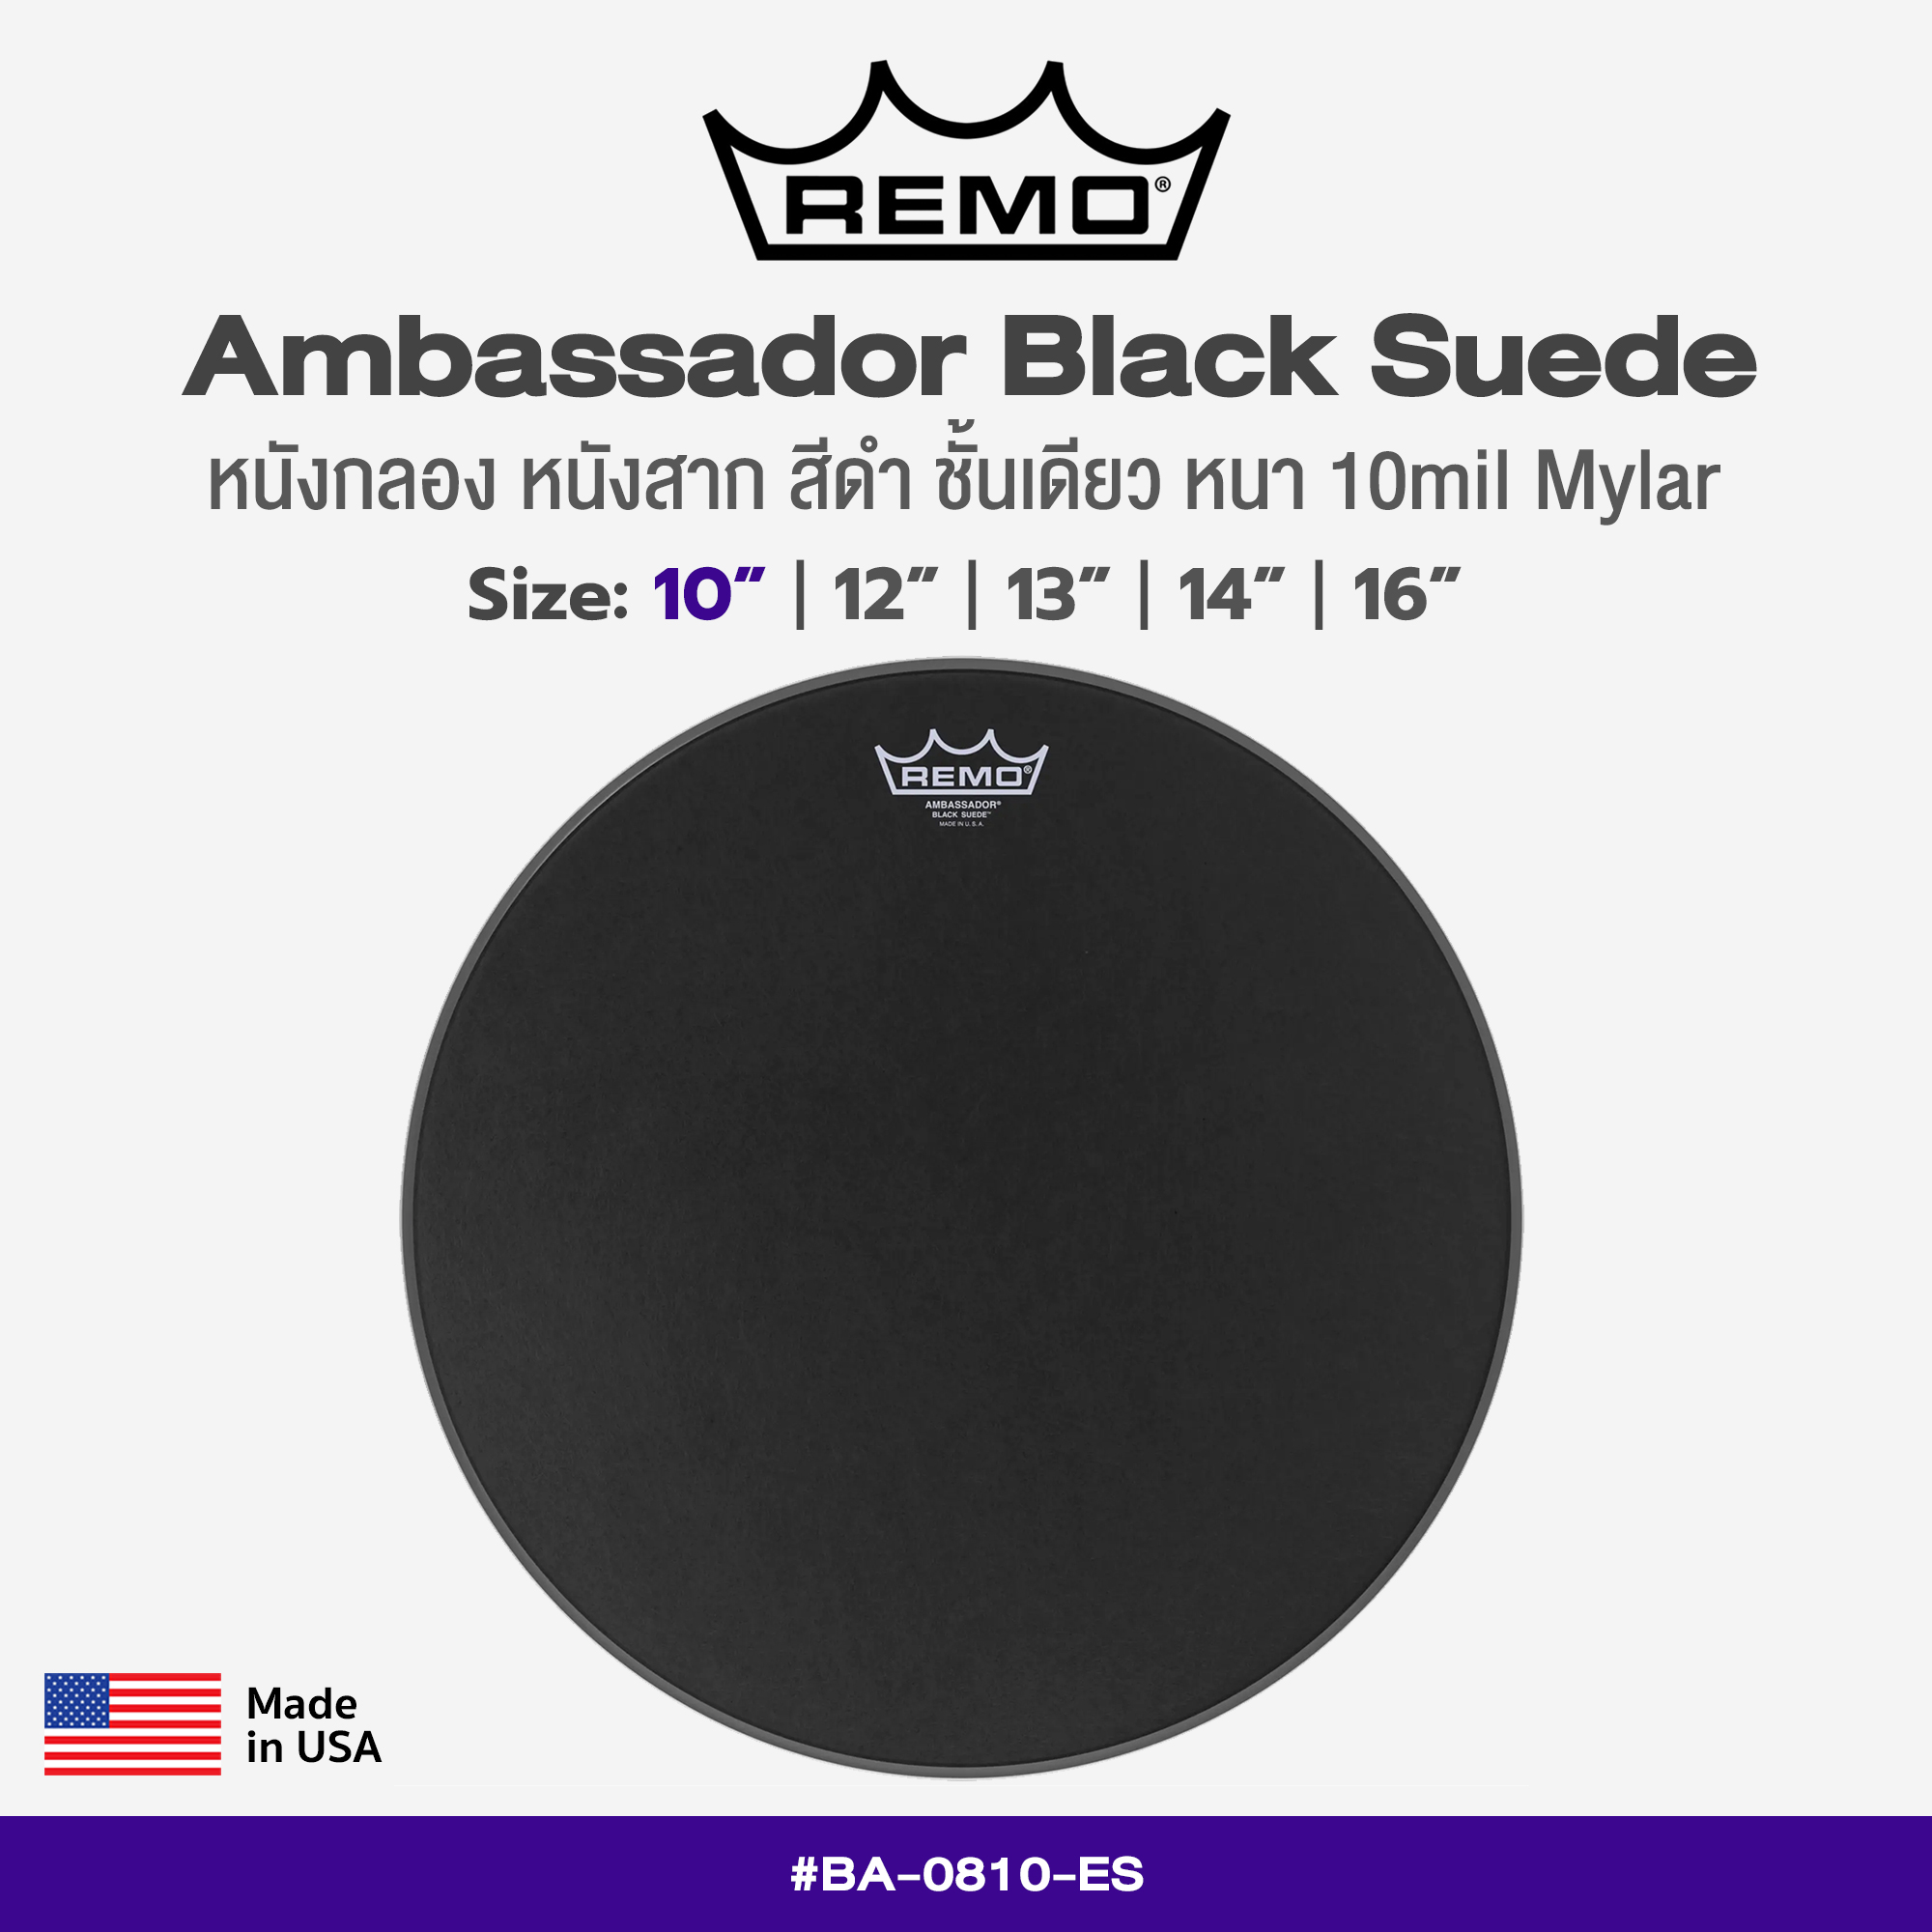 Remo Black Suede Ambassador